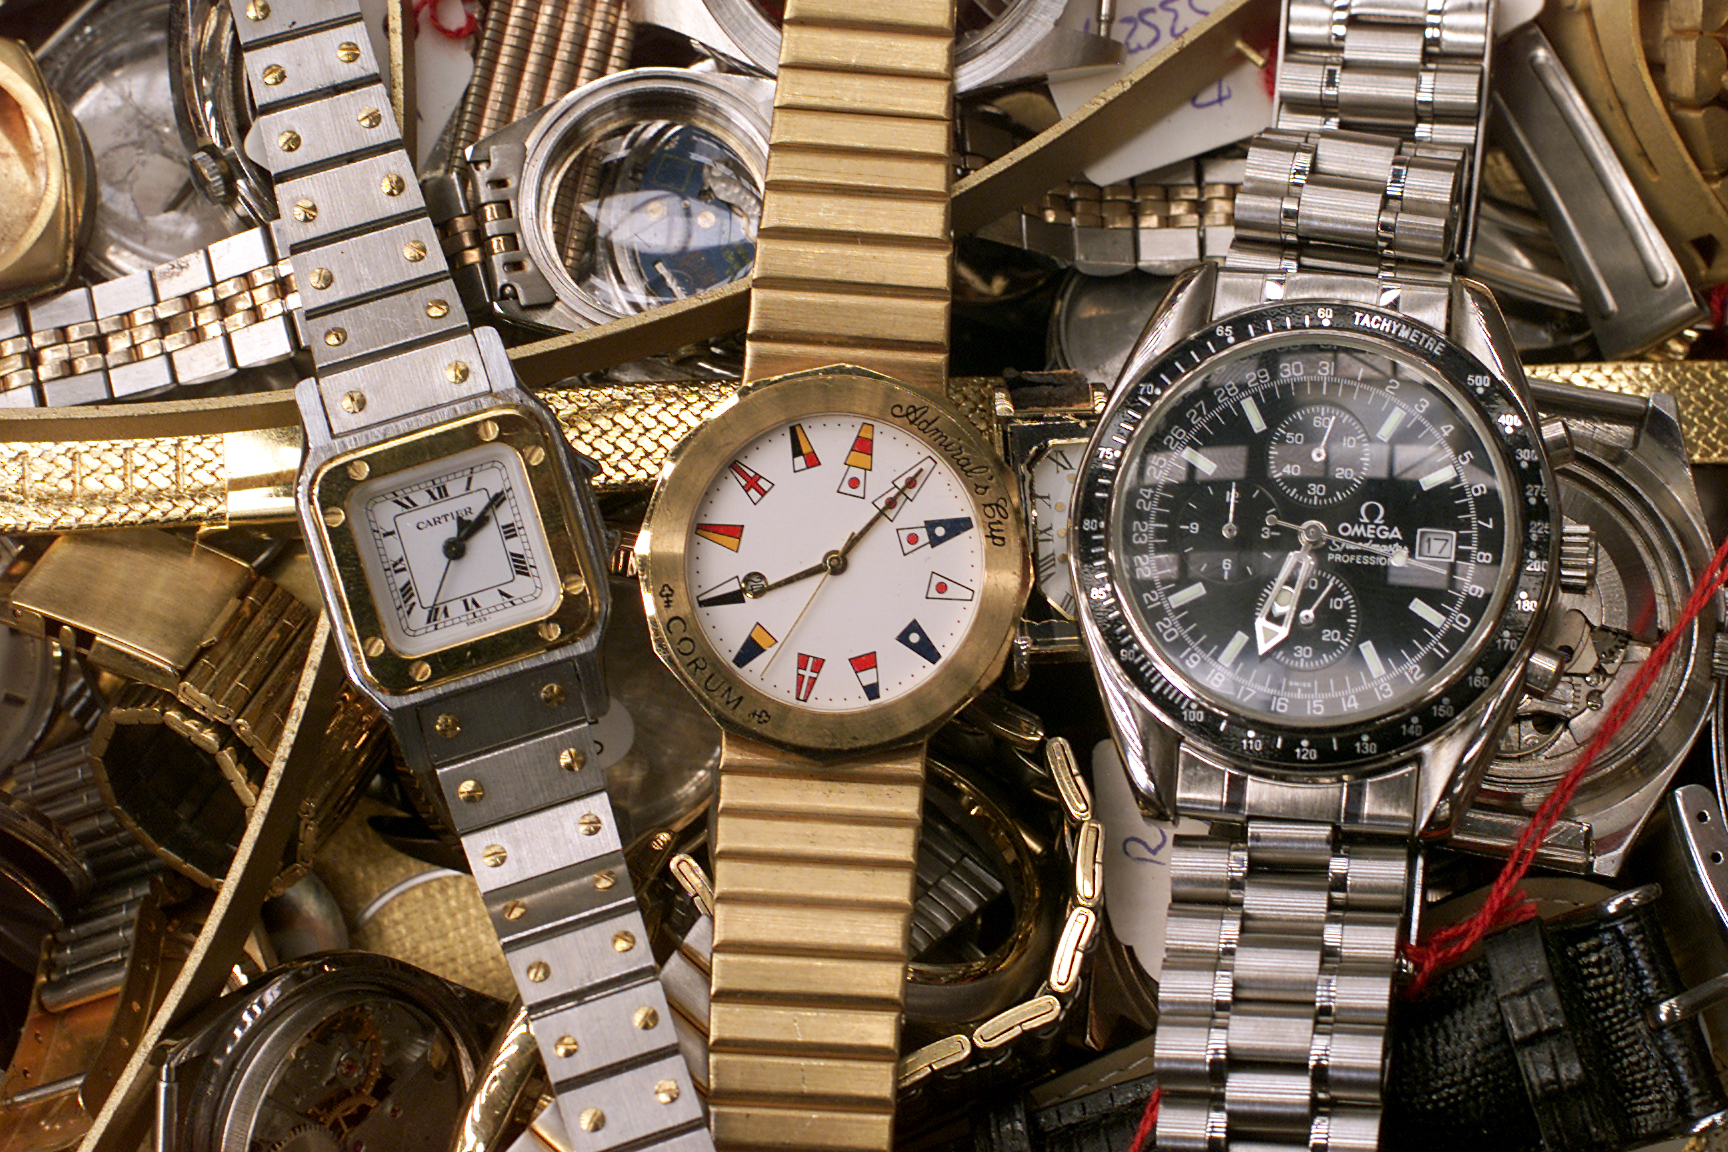 Les douanes suisses ont intercepté des centaines d'envois de fausses montres ces dernières semaines.